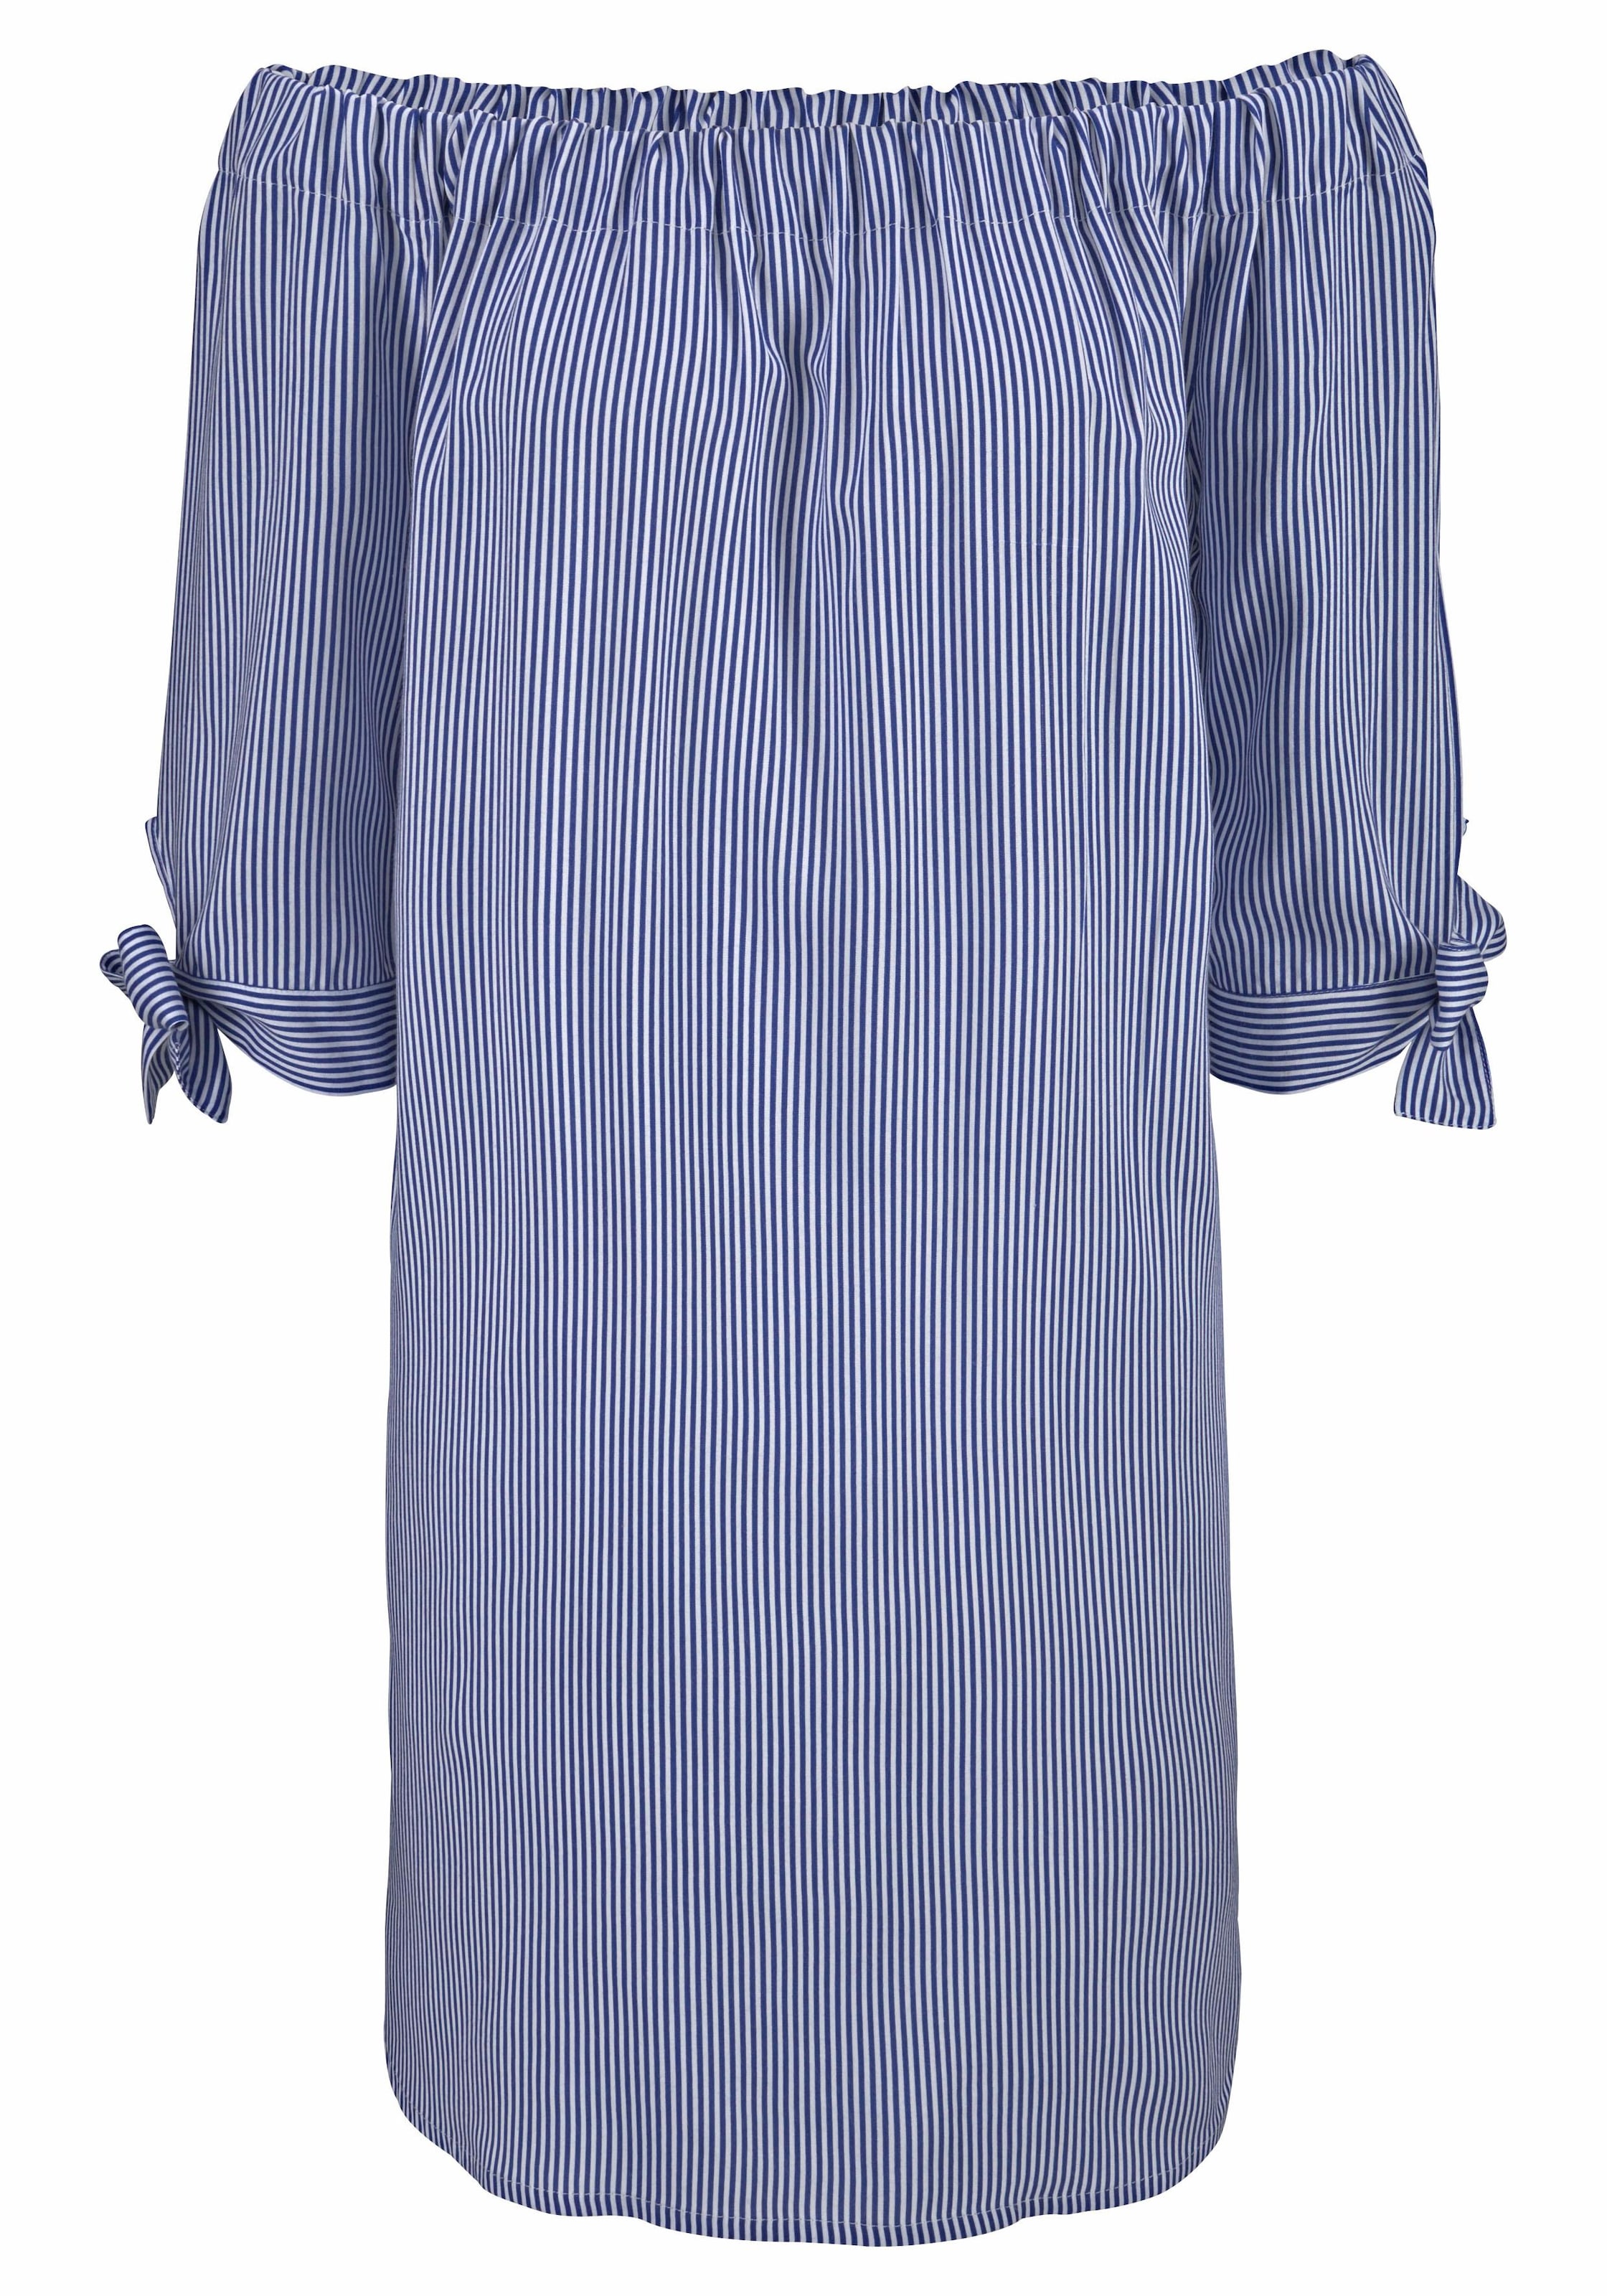 LASCANA Blusenkleid, & » mit Lingerie Unterwäsche | Carmenausschnitt kaufen Bademode, online LASCANA